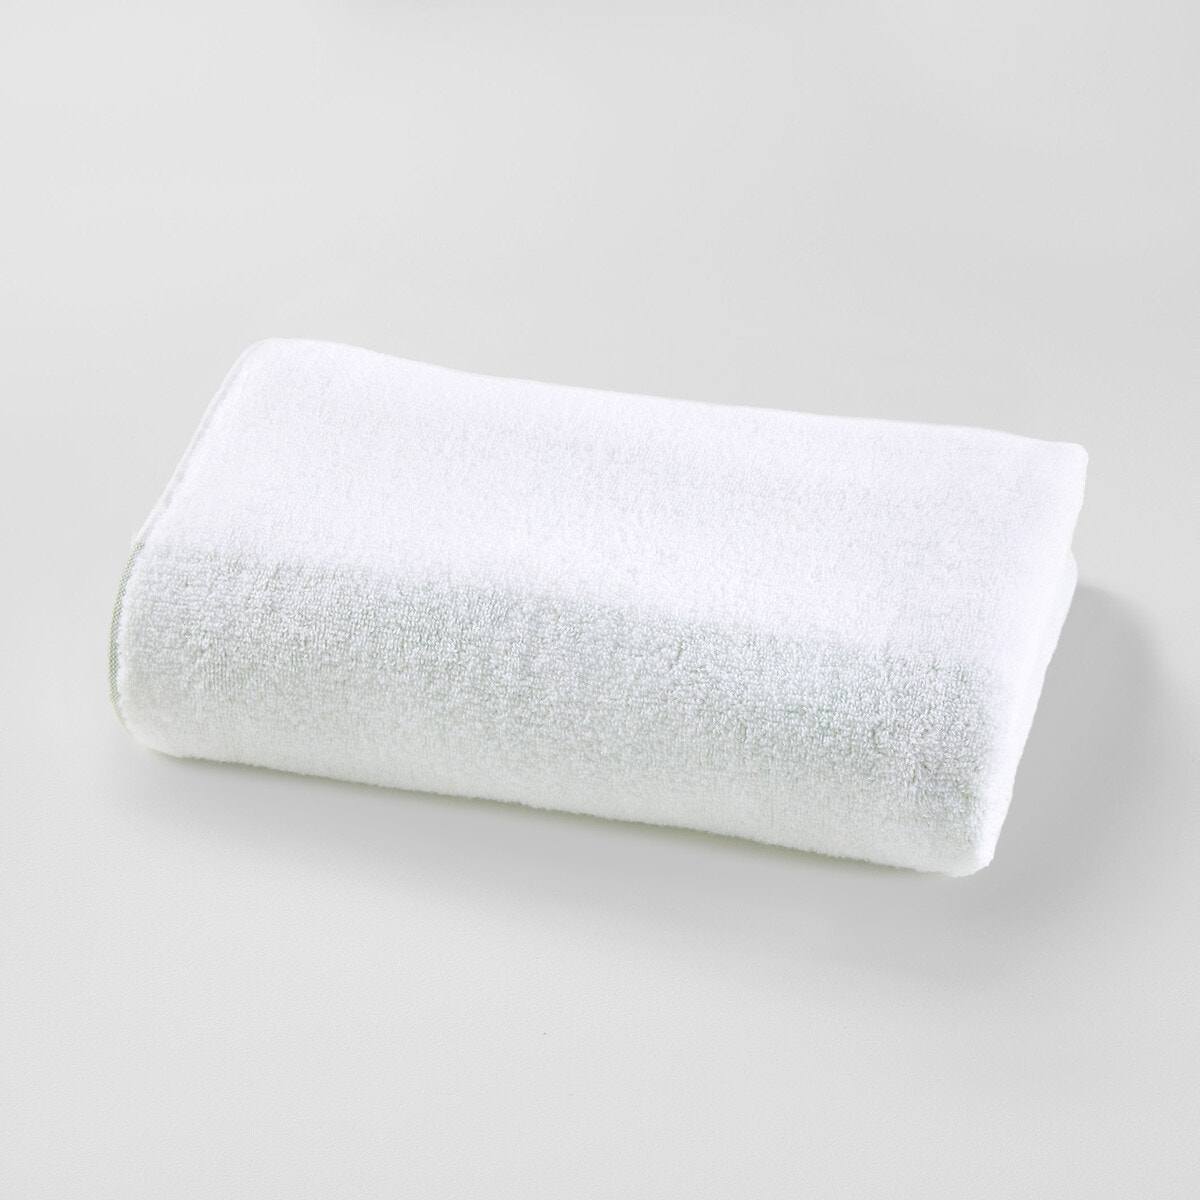 Σπίτι > Λευκά είδη > Μπάνιο > Πετσέτες μπάνιου Μάξι πετσέτα μπάνιου Zero twist 420g 100x150 cm